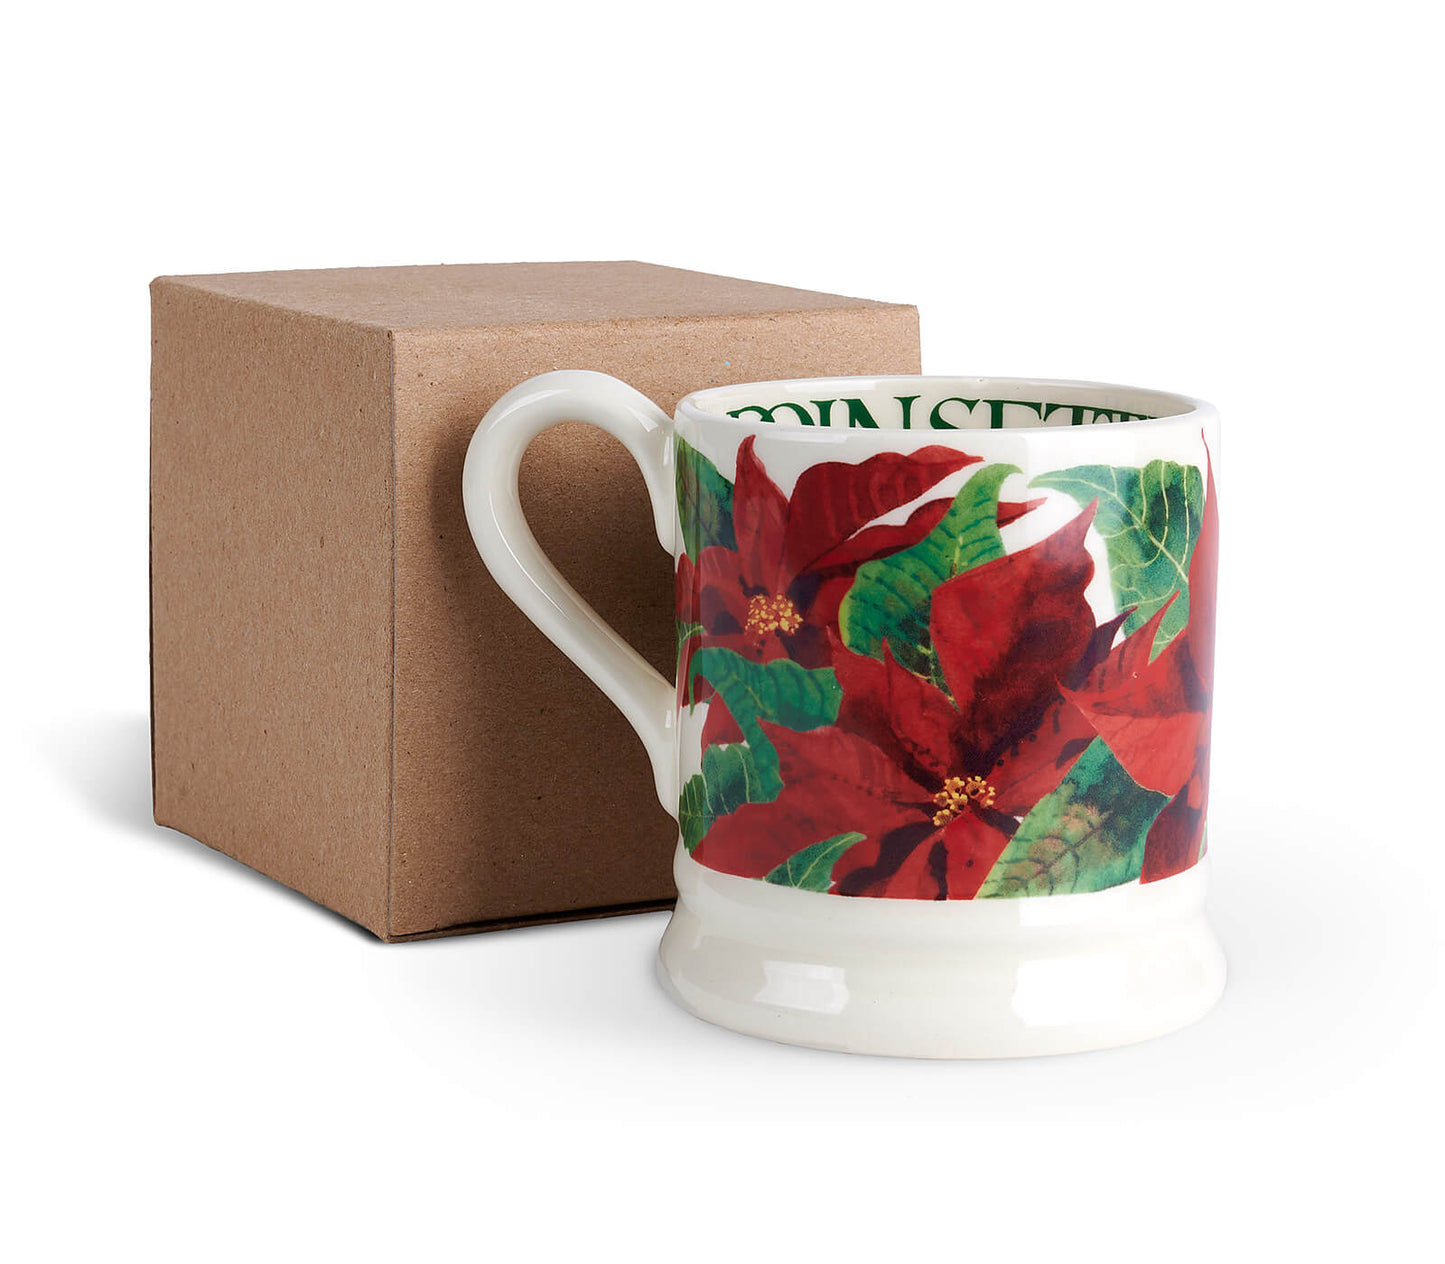 Poinsettia 1/2 Pint Mug